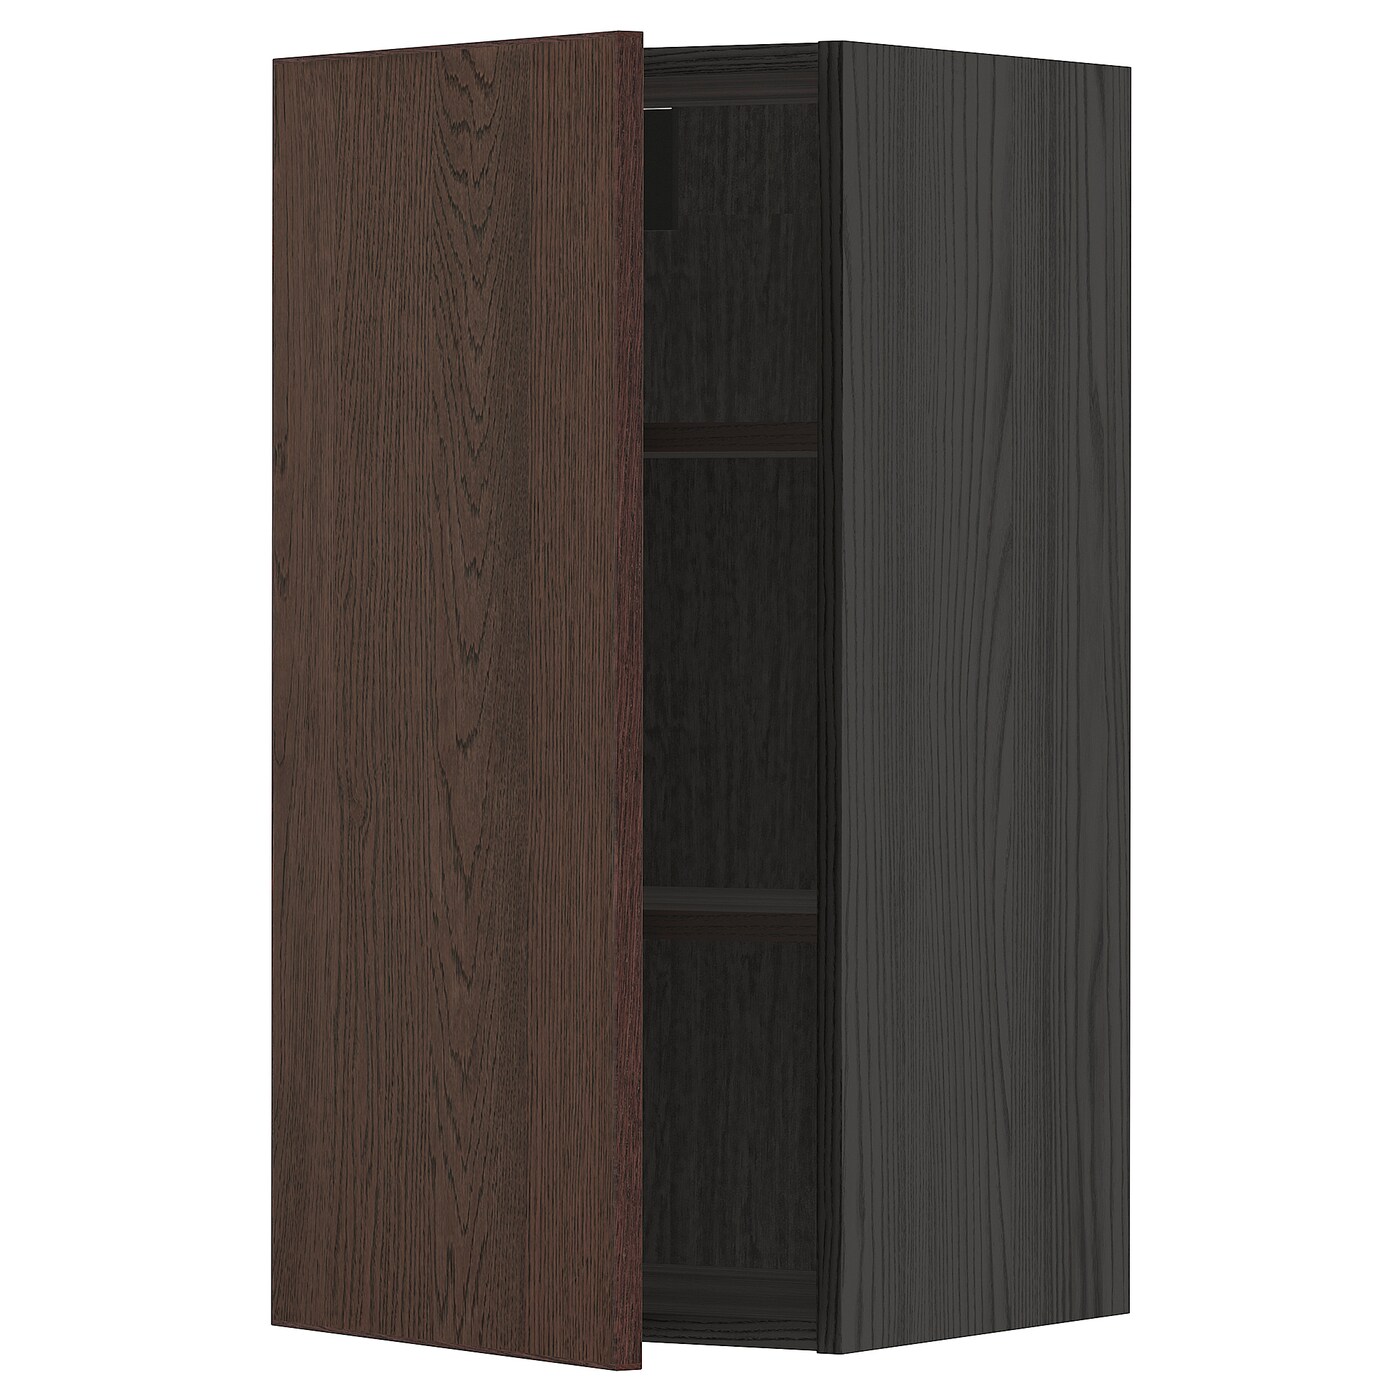 Навесной шкаф с полкой - METOD IKEA/ МЕТОД ИКЕА, 80х40 см, черный/коричневый